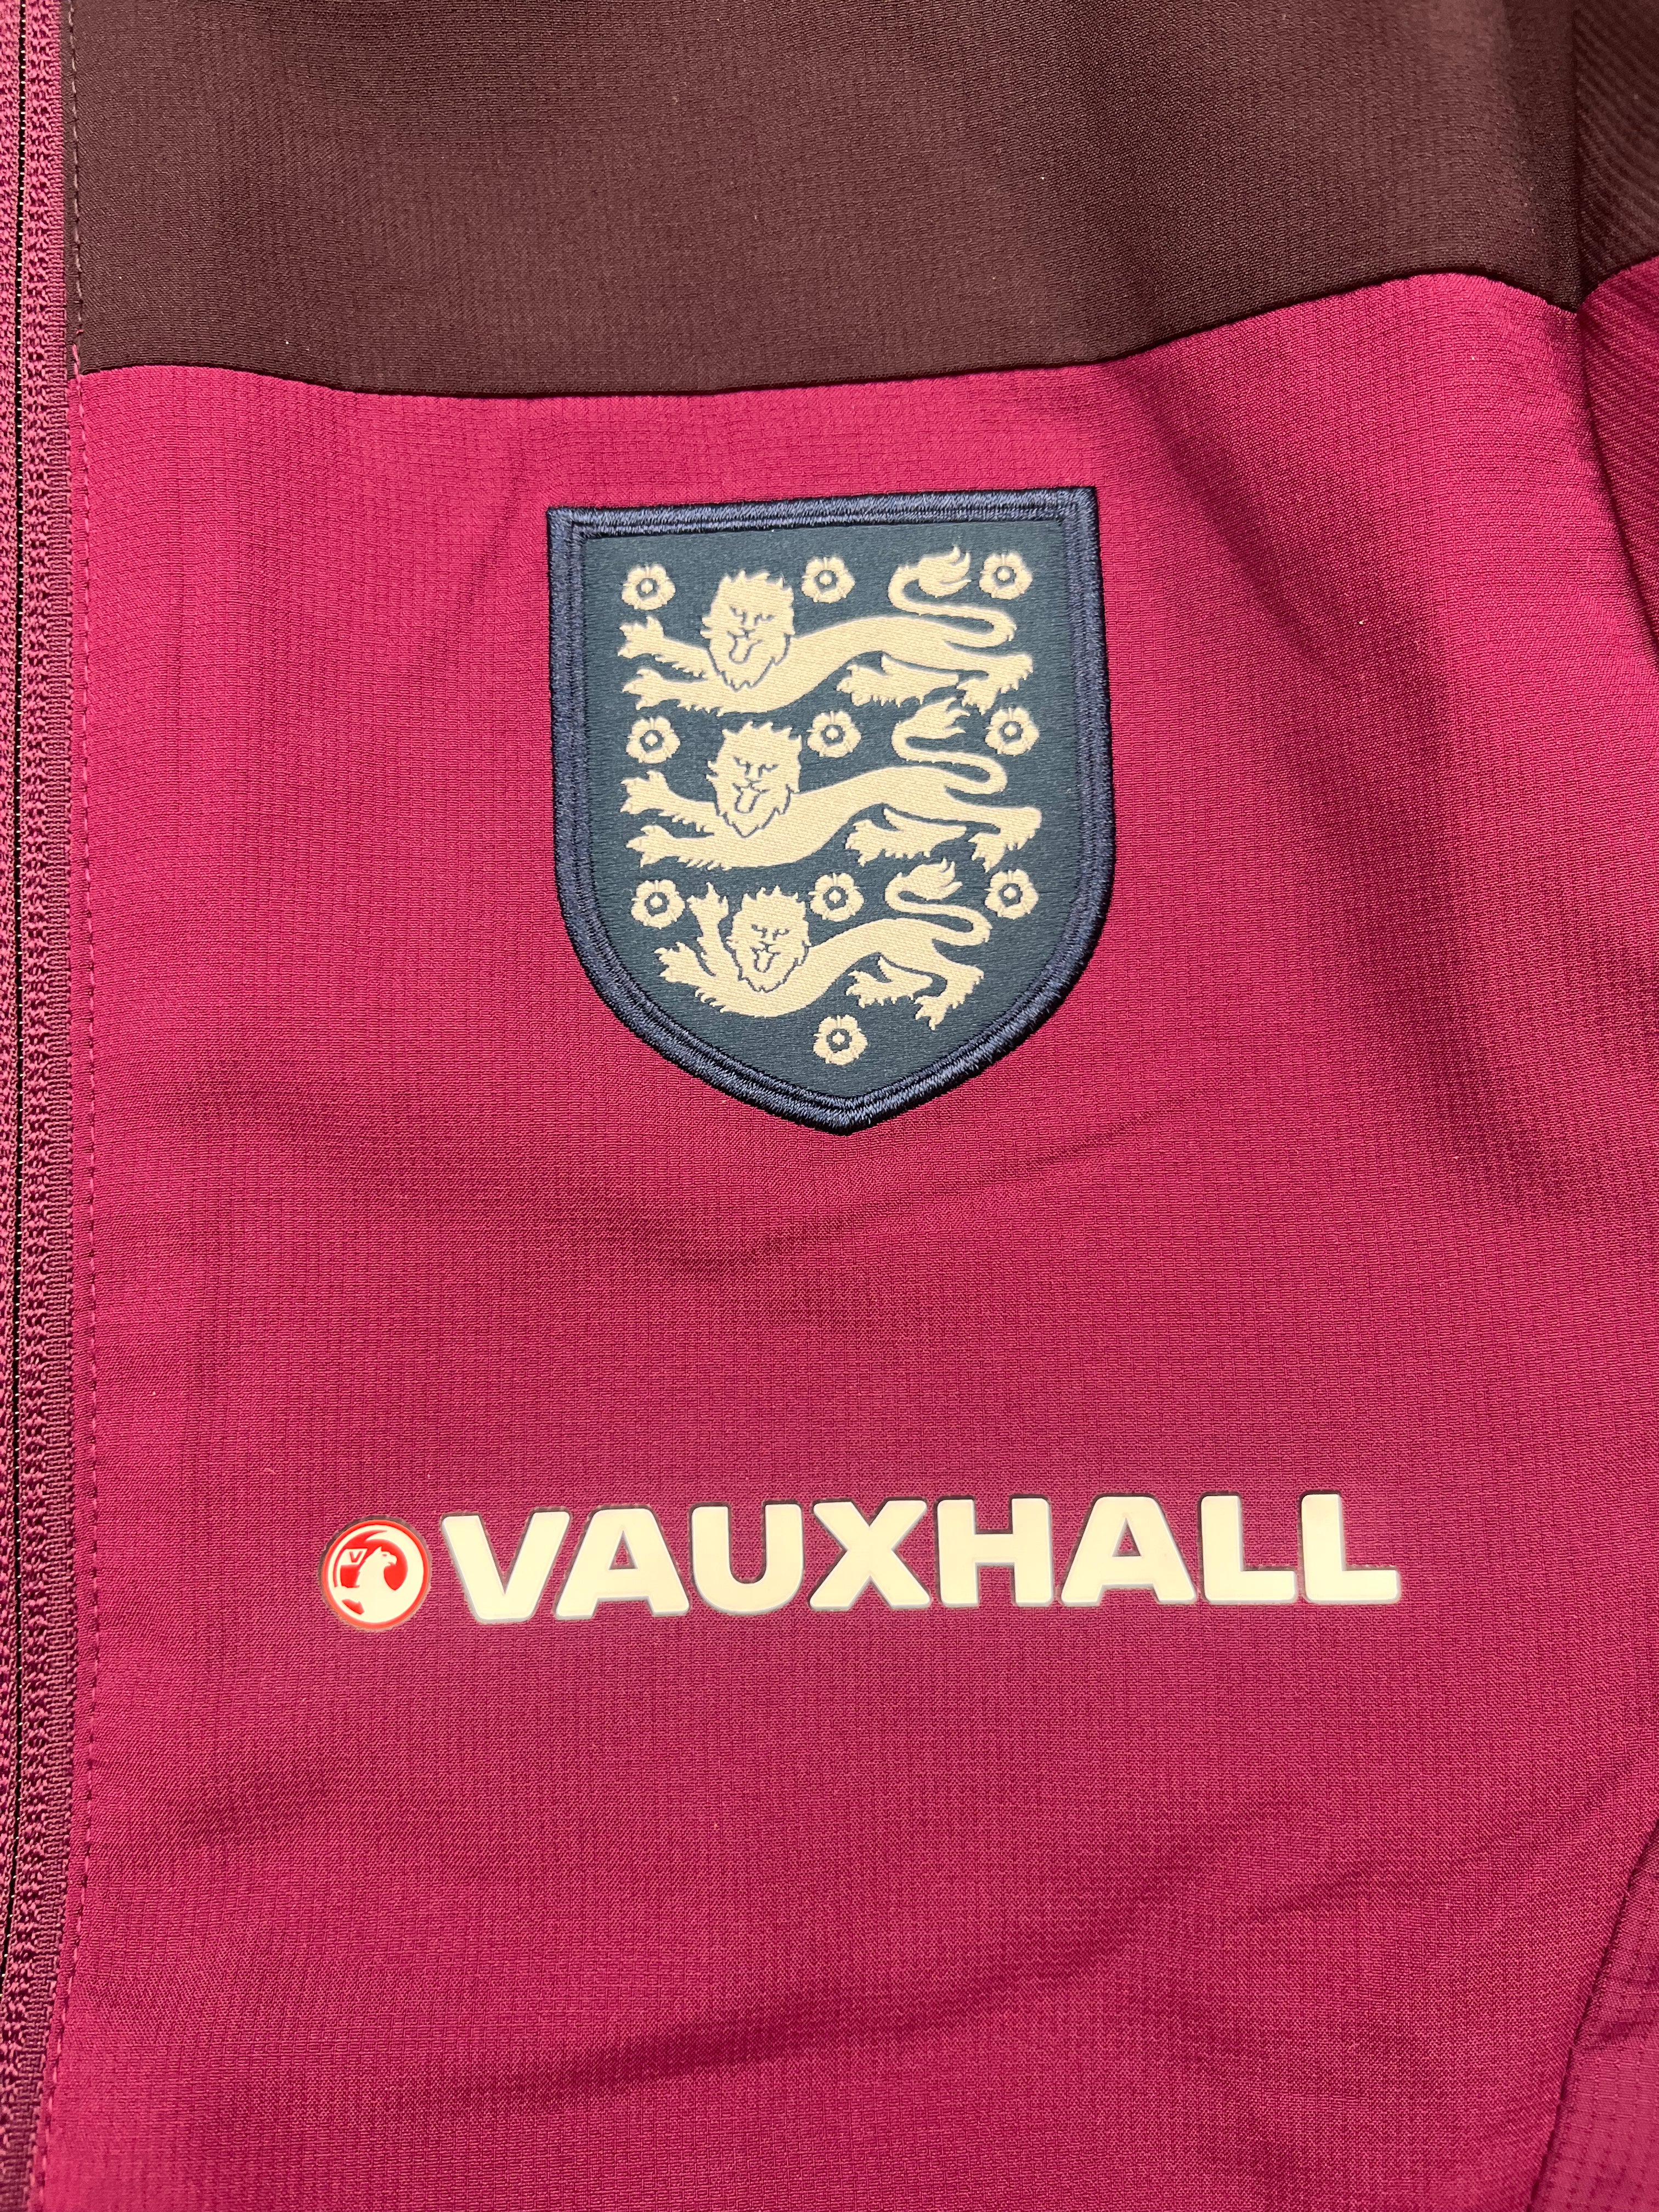 2014/15 England Training Jacket (S) 9/10